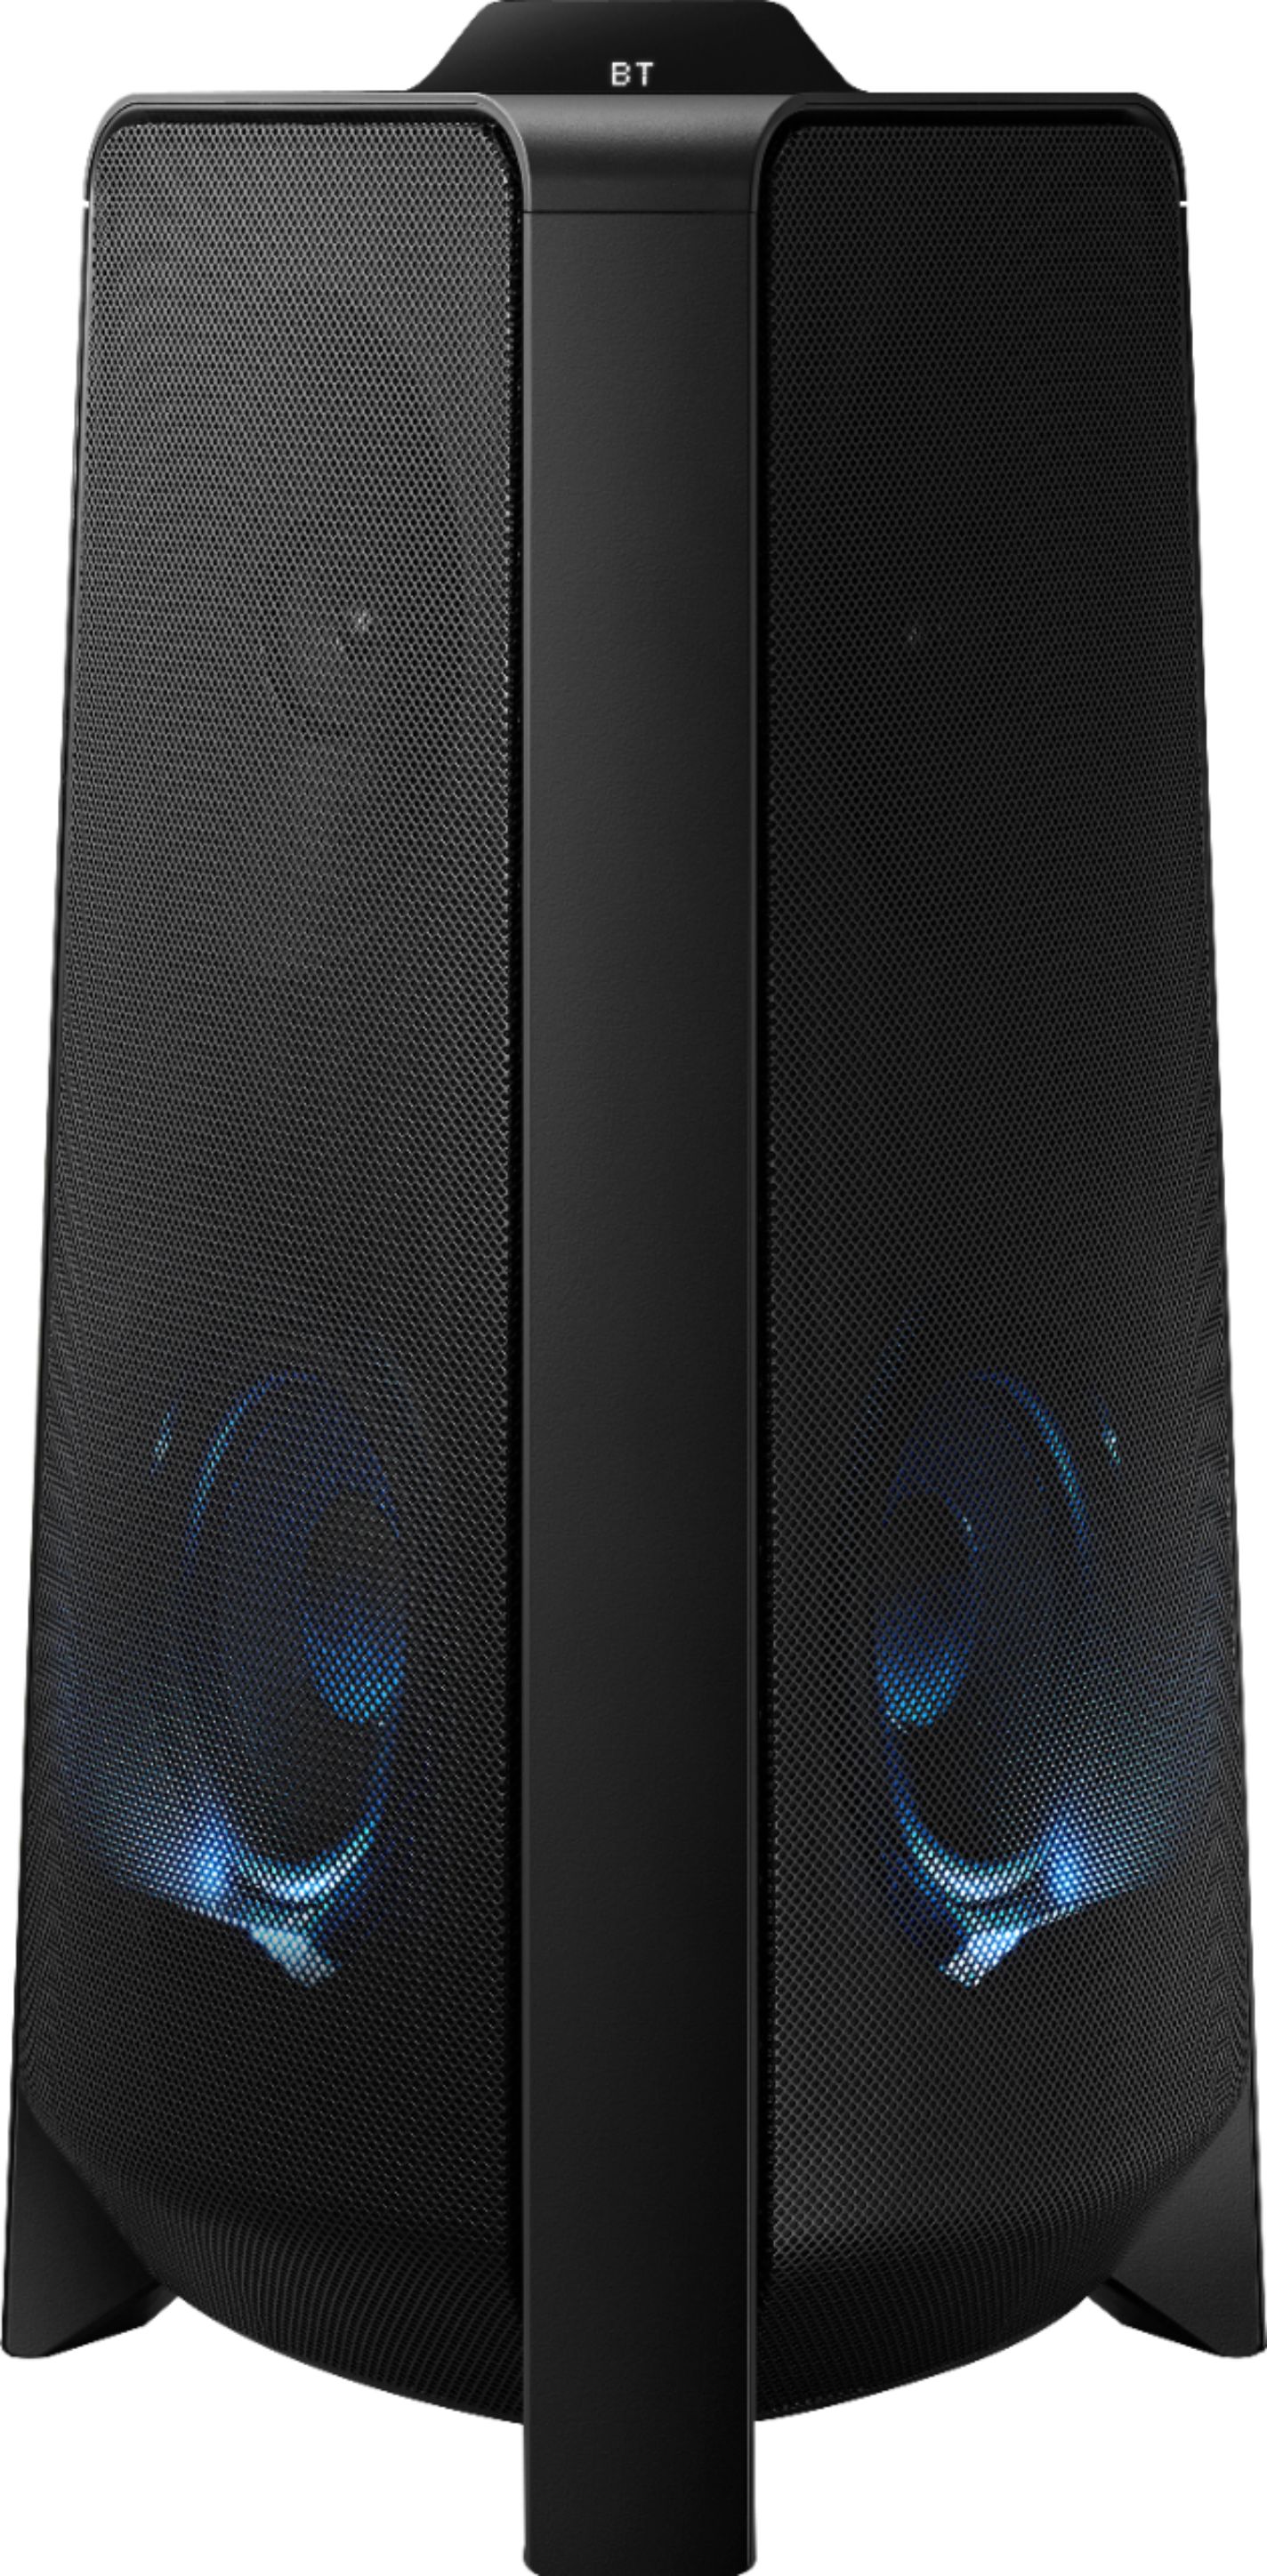 Samsung MX-T50 Sound Tower 500W Wireless Speaker Black MX 